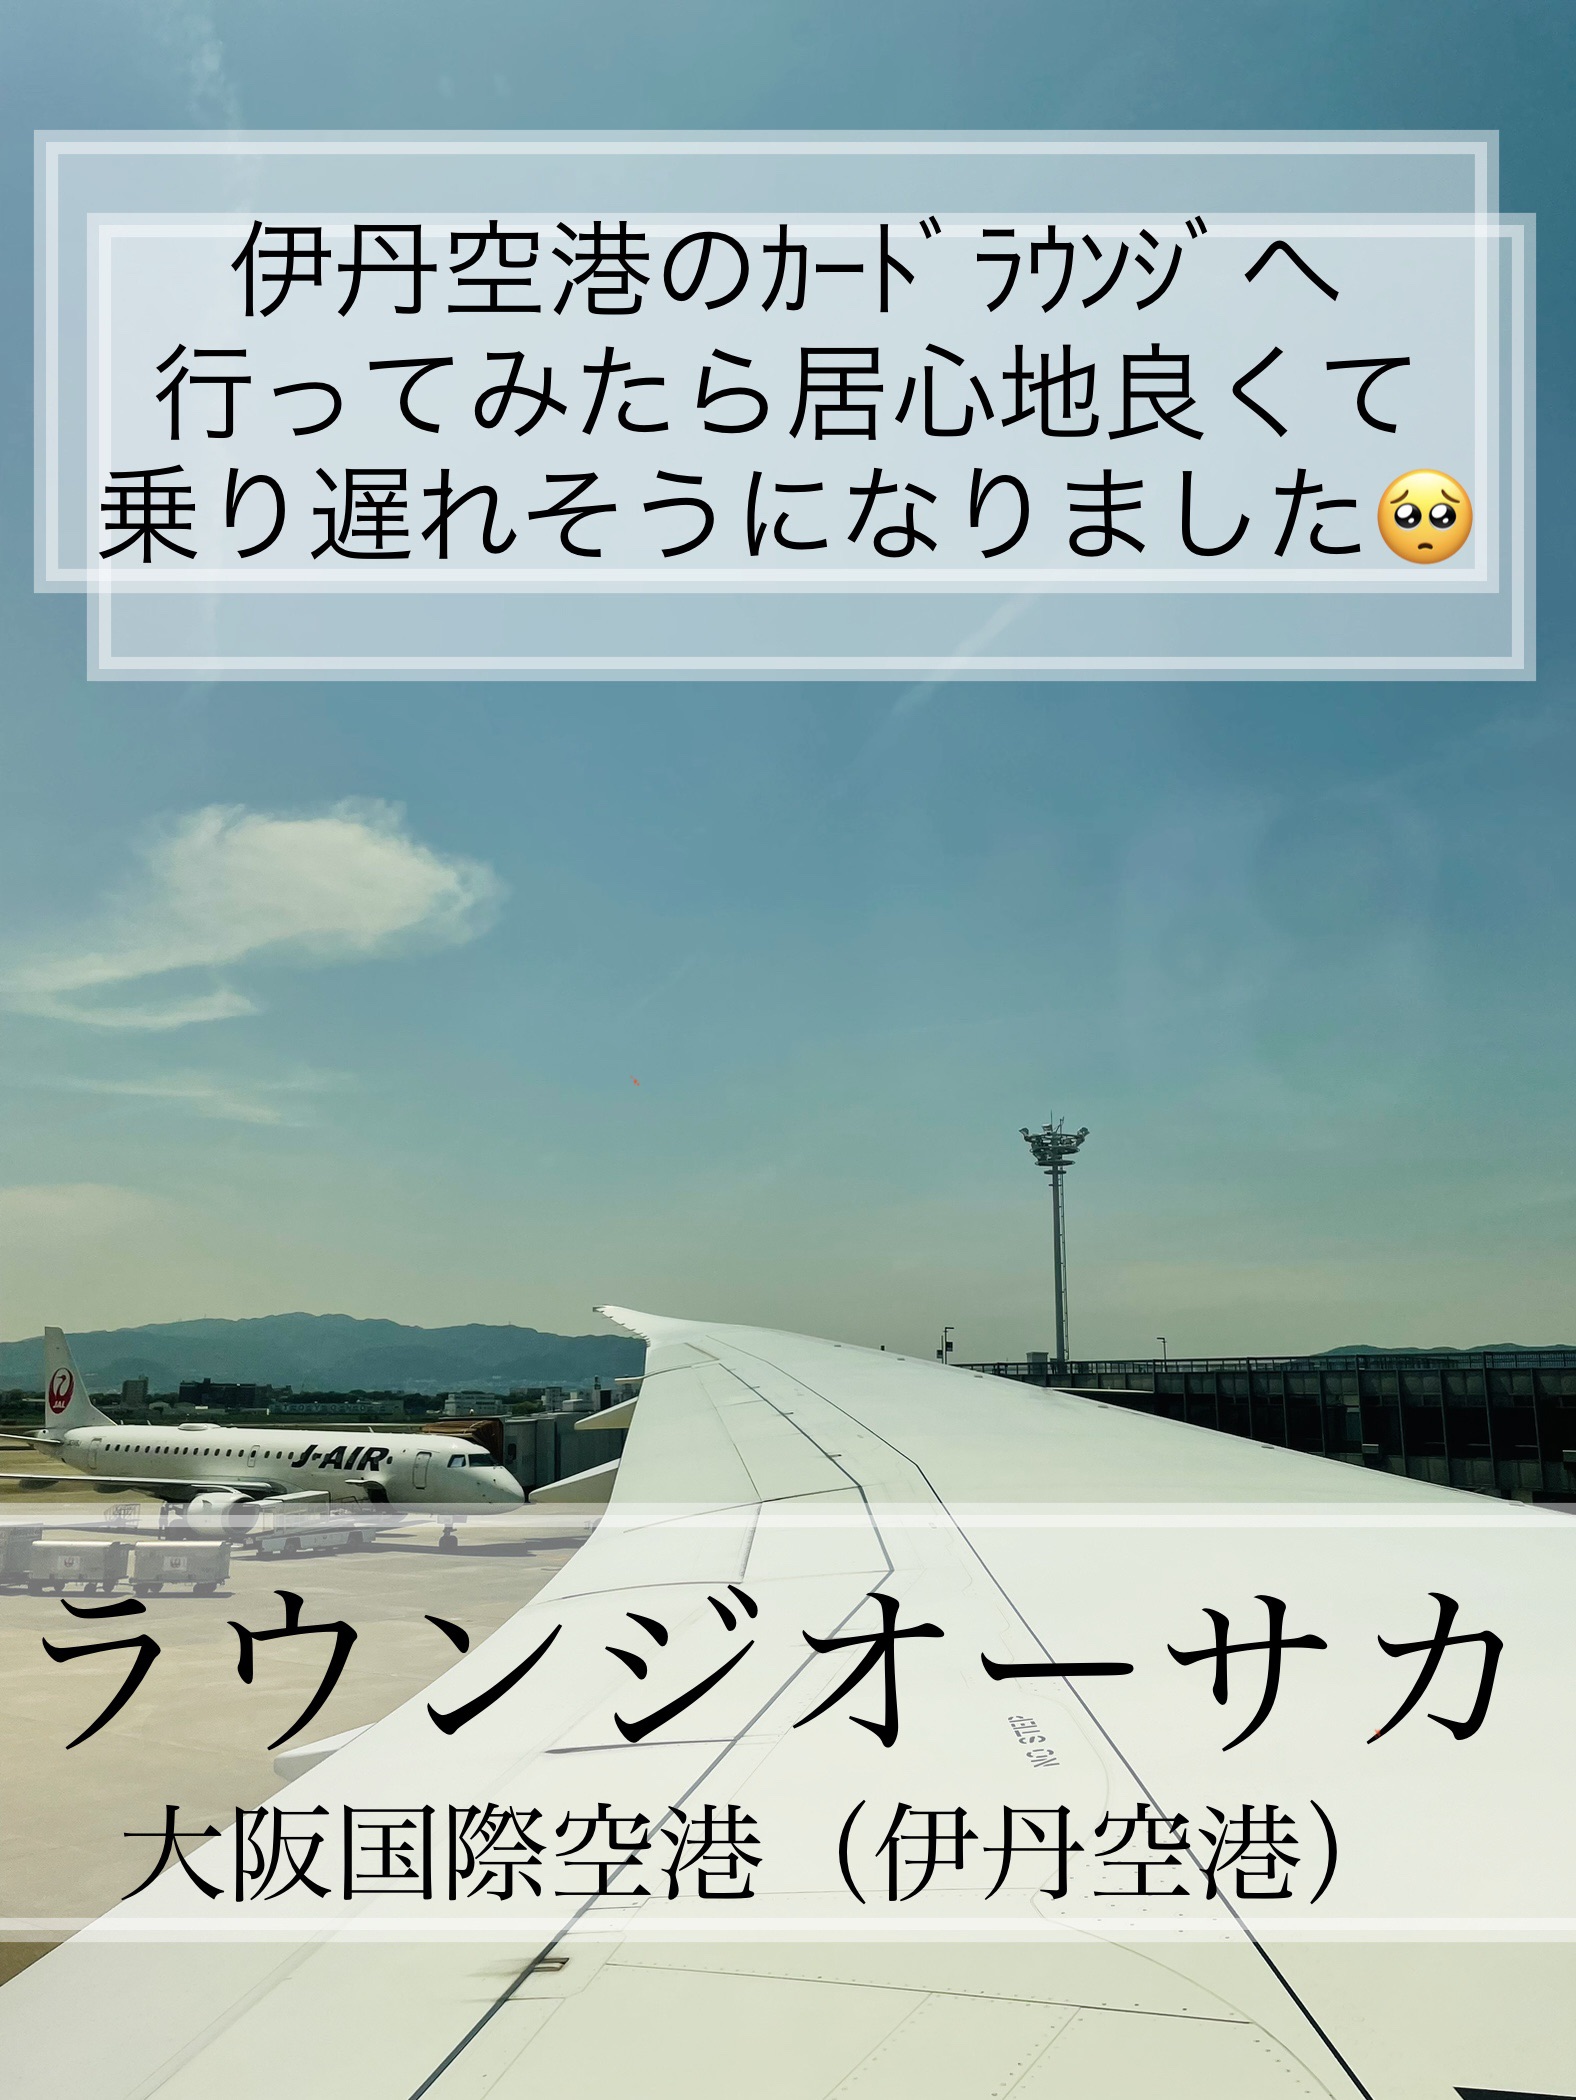 [大阪]伊丹机场ｶｰﾄﾞﾗｳﾝｼﾞ“休息室大阪”停下来!